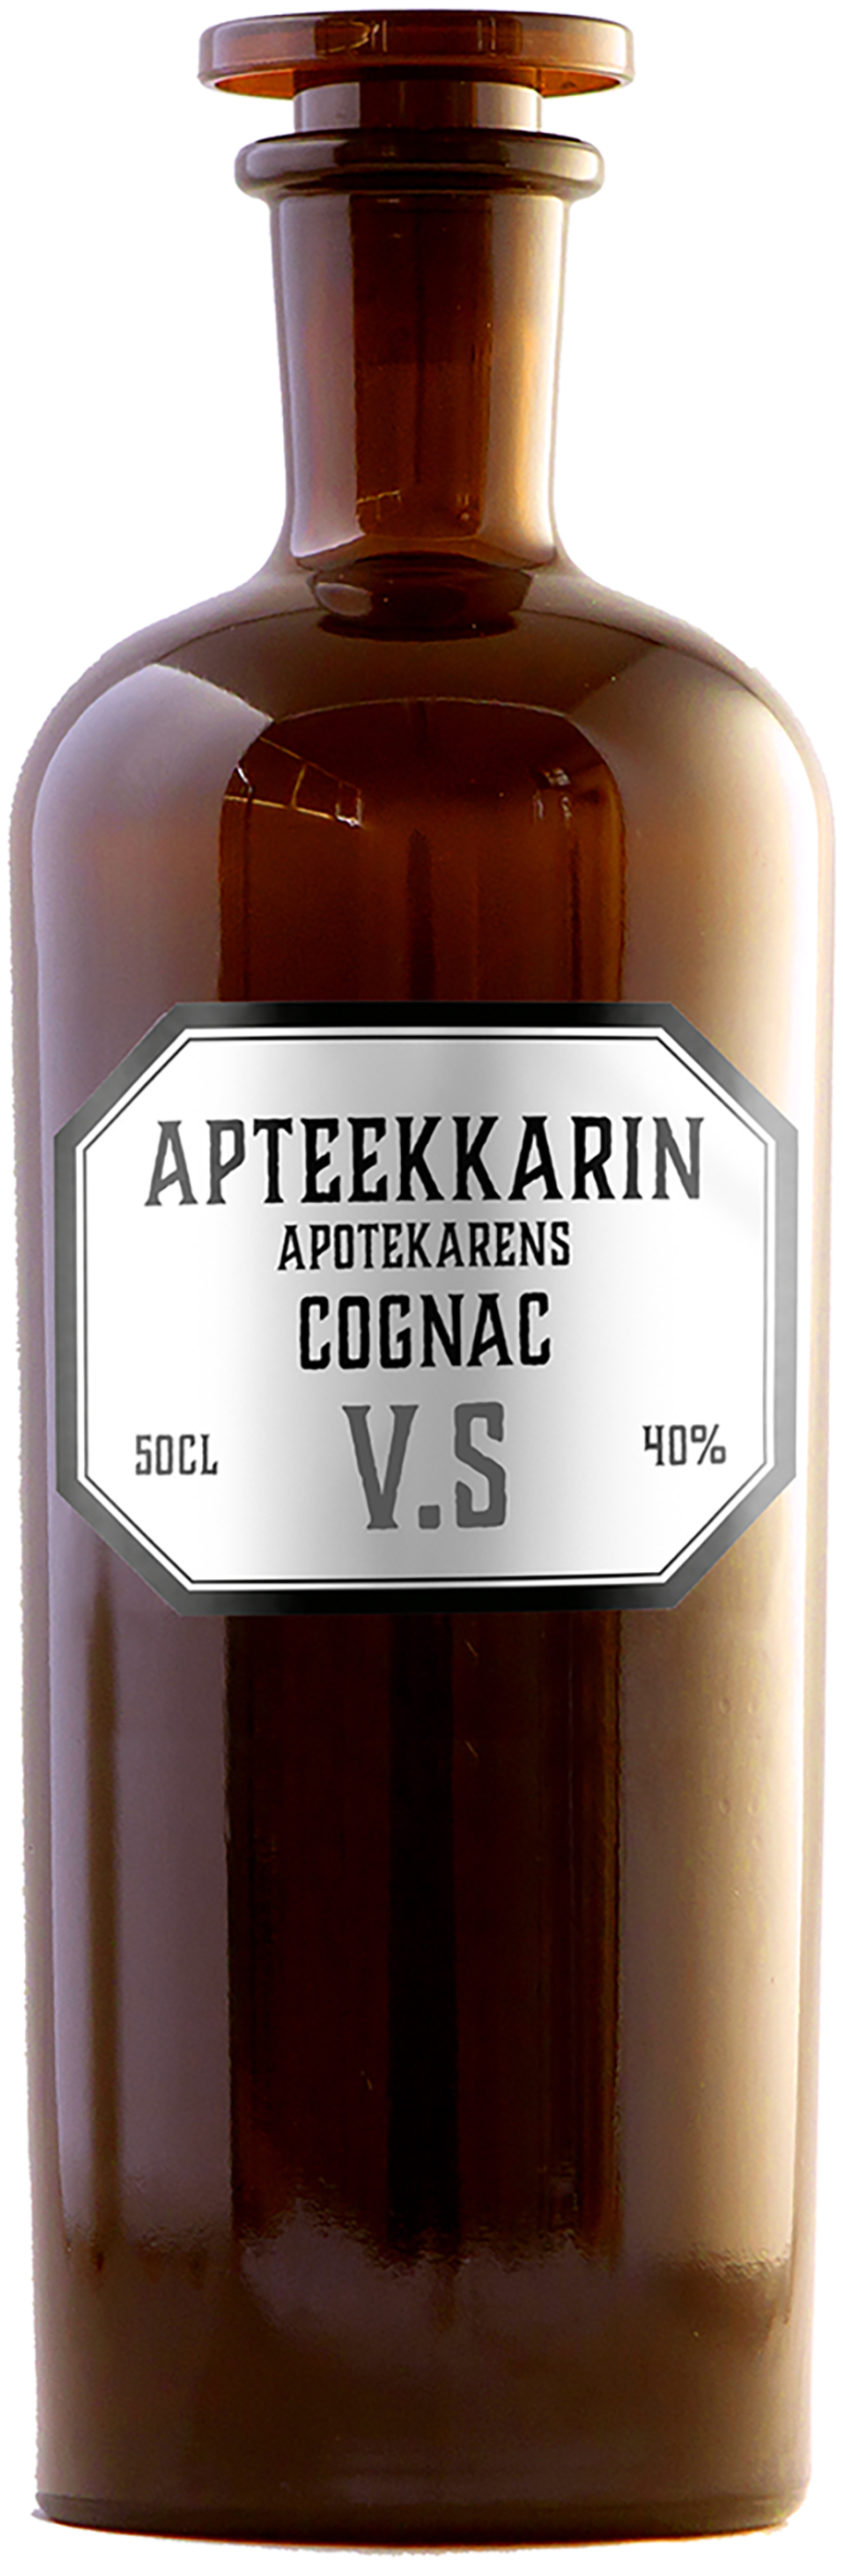 Apteekkarin Cognac VS